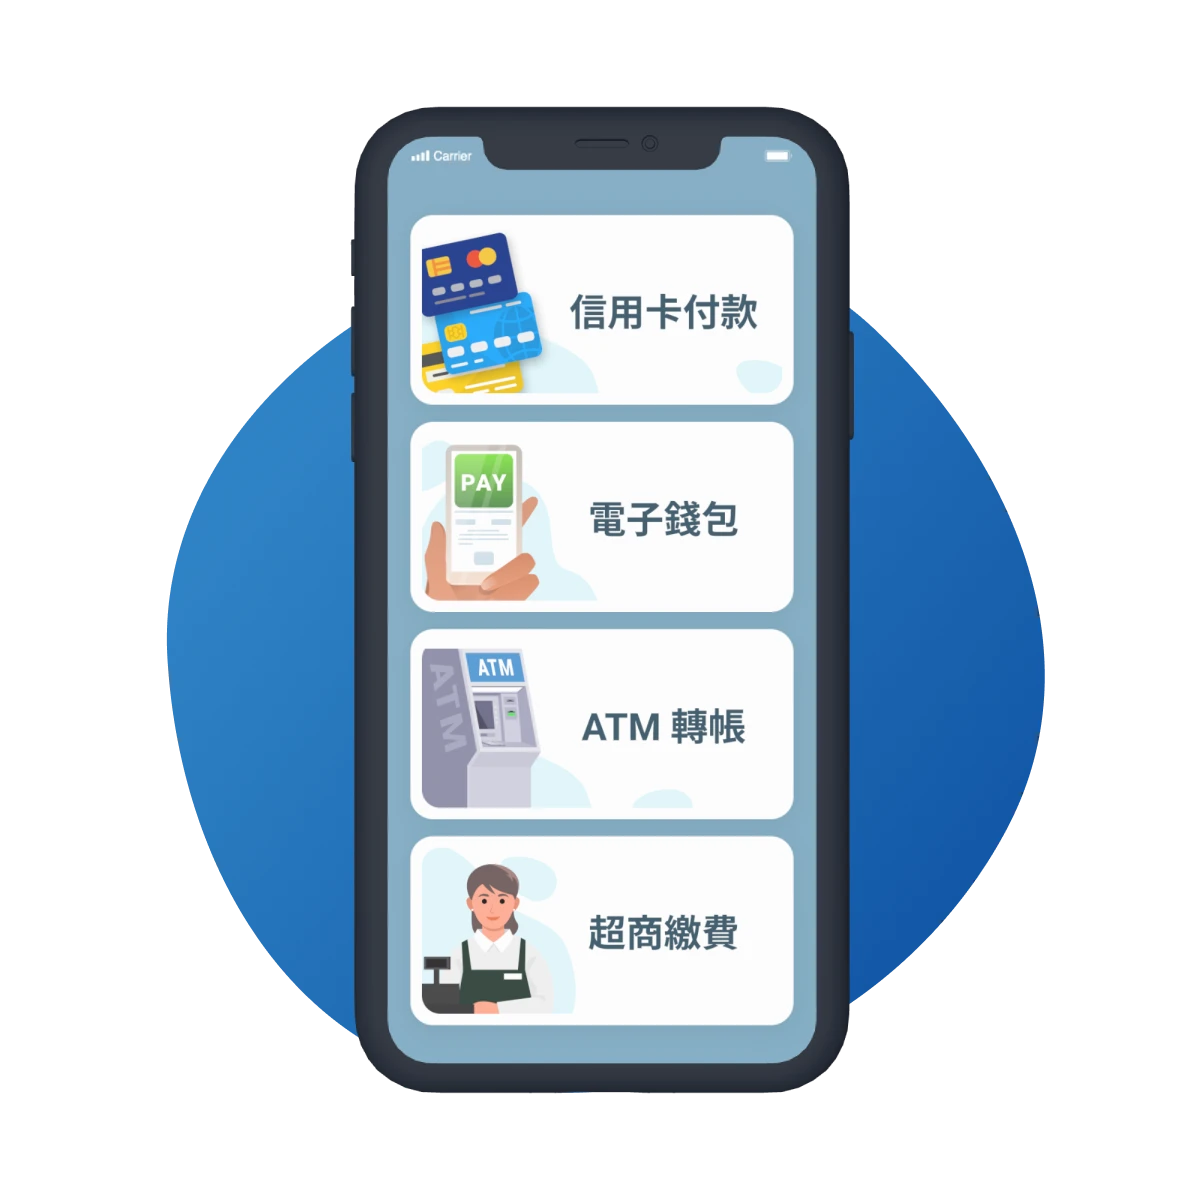 威許移動：結帳流程支援信用卡付款、電子錢包、ATM 轉帳、超商繳費等付款方式。By WishMobile